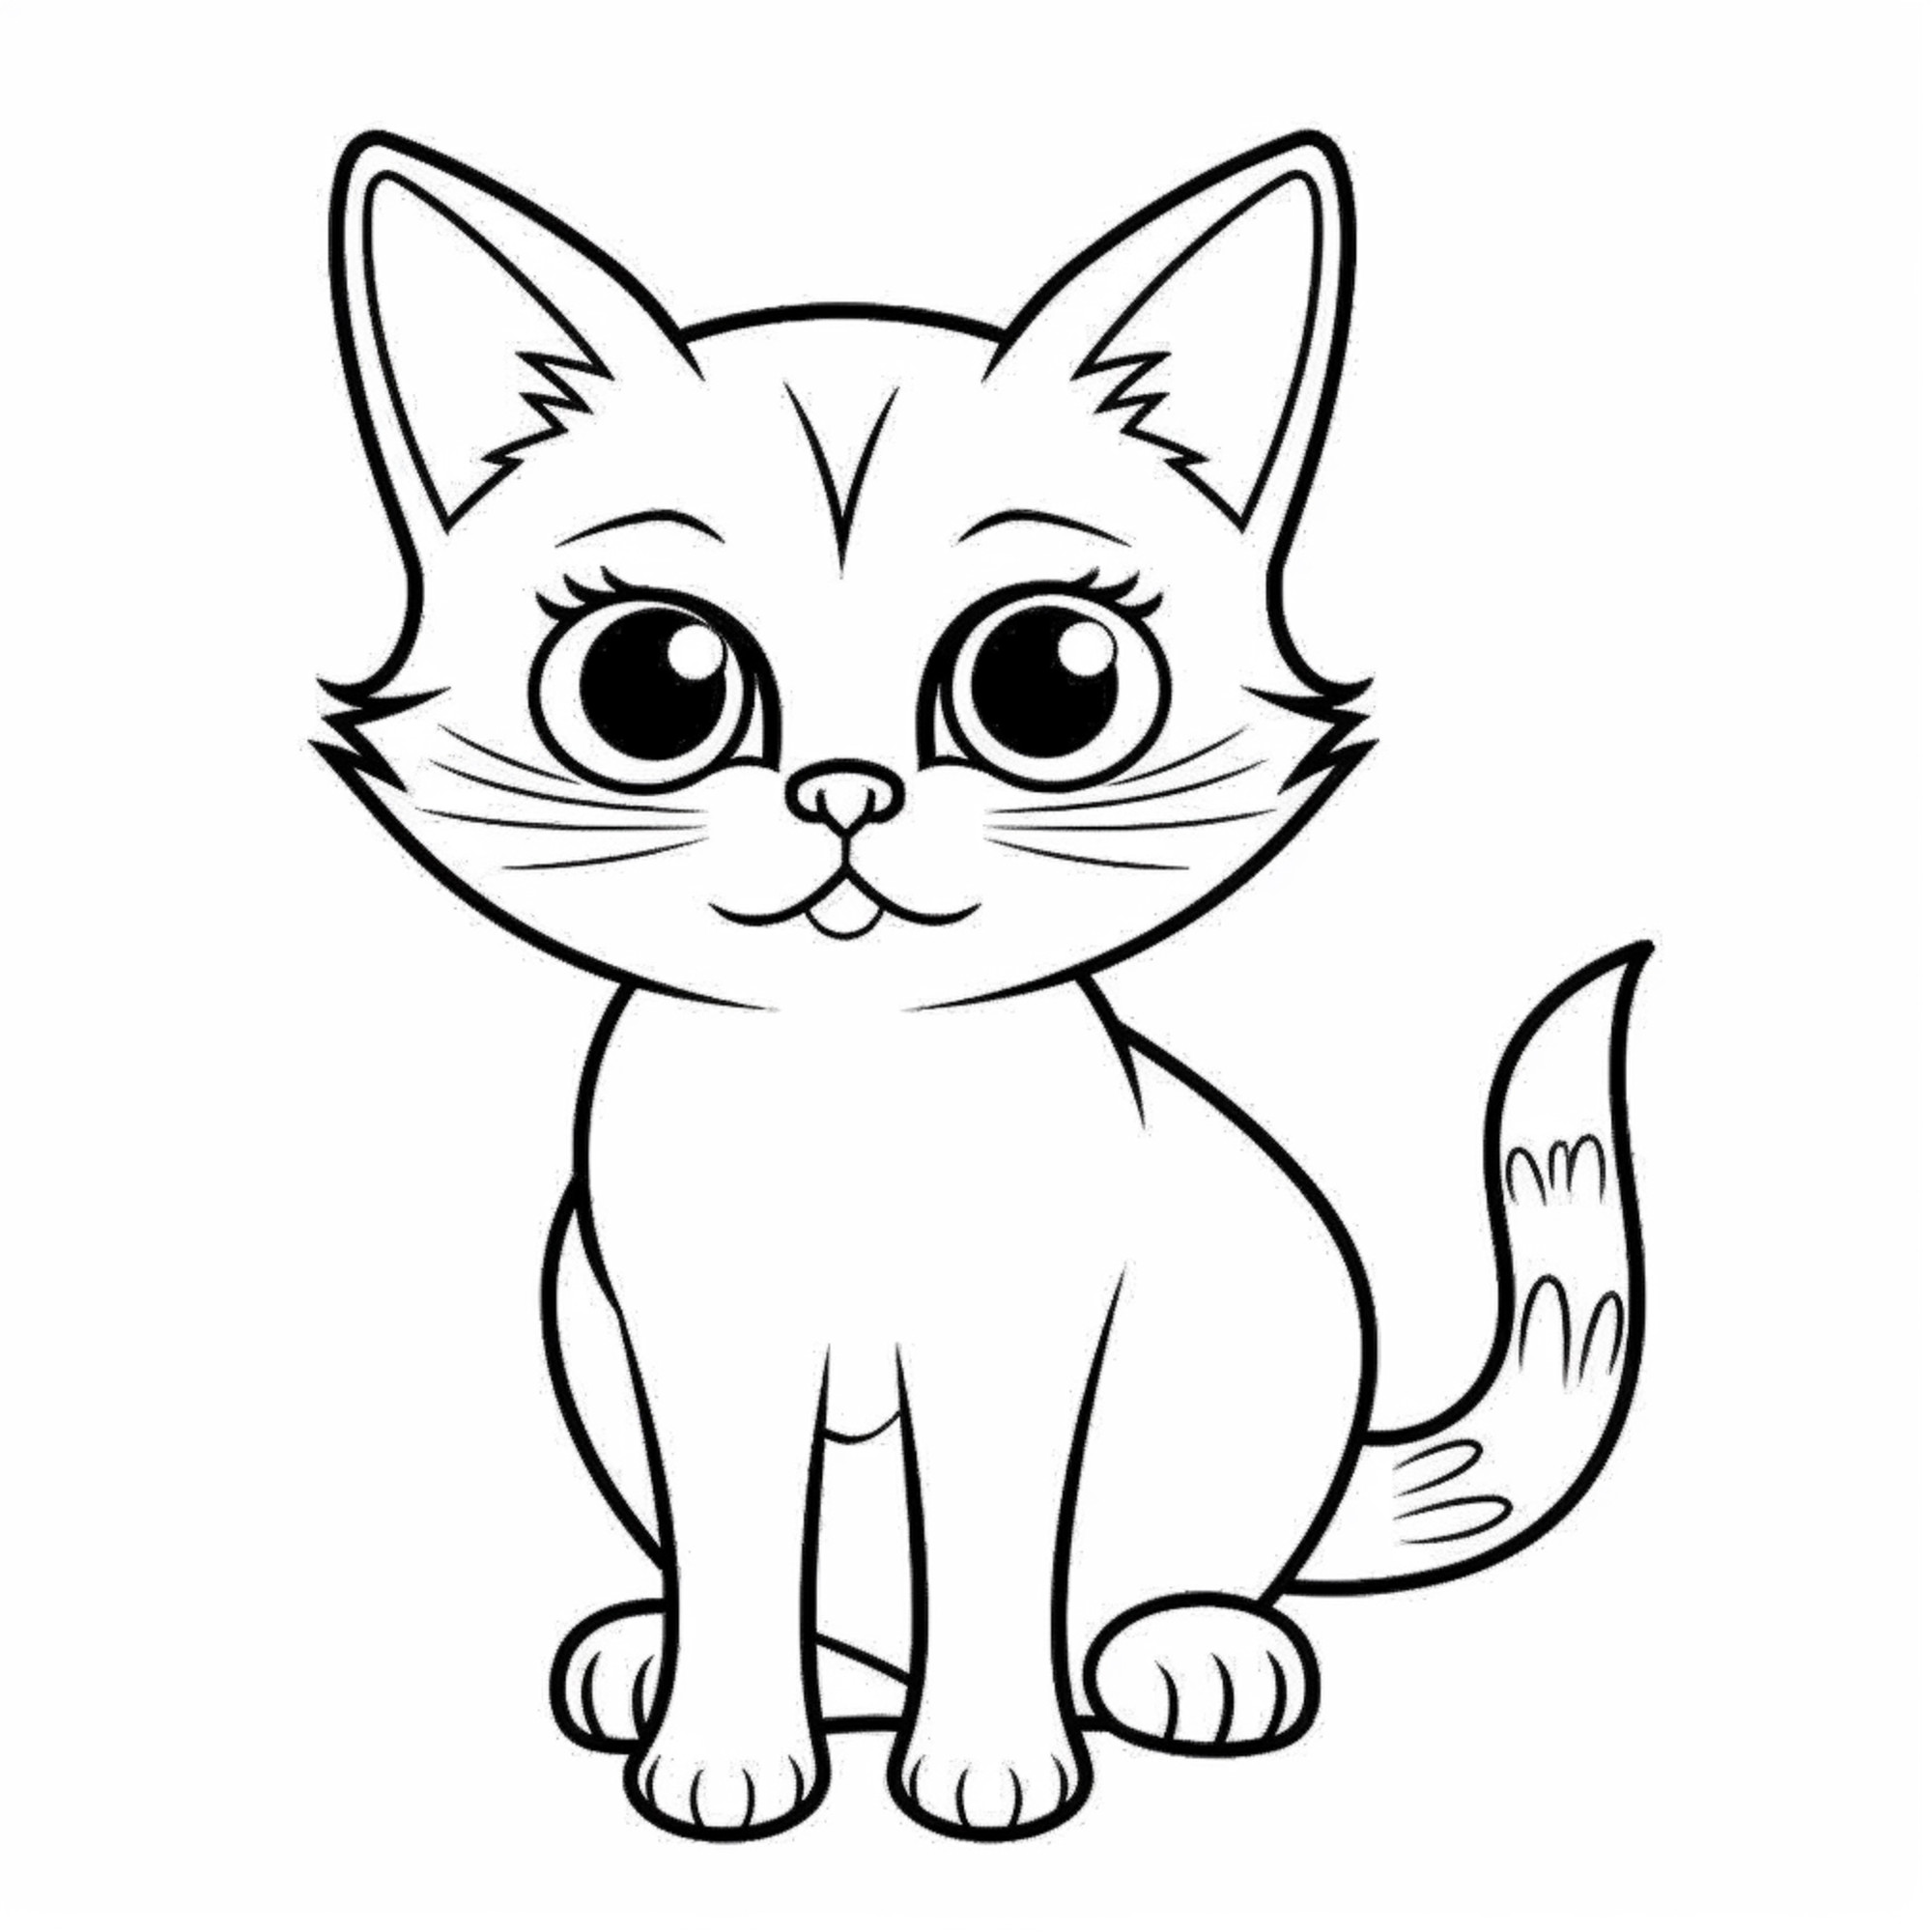 Раскраска для детей: кошка с большими глазами и пушистым хвостом